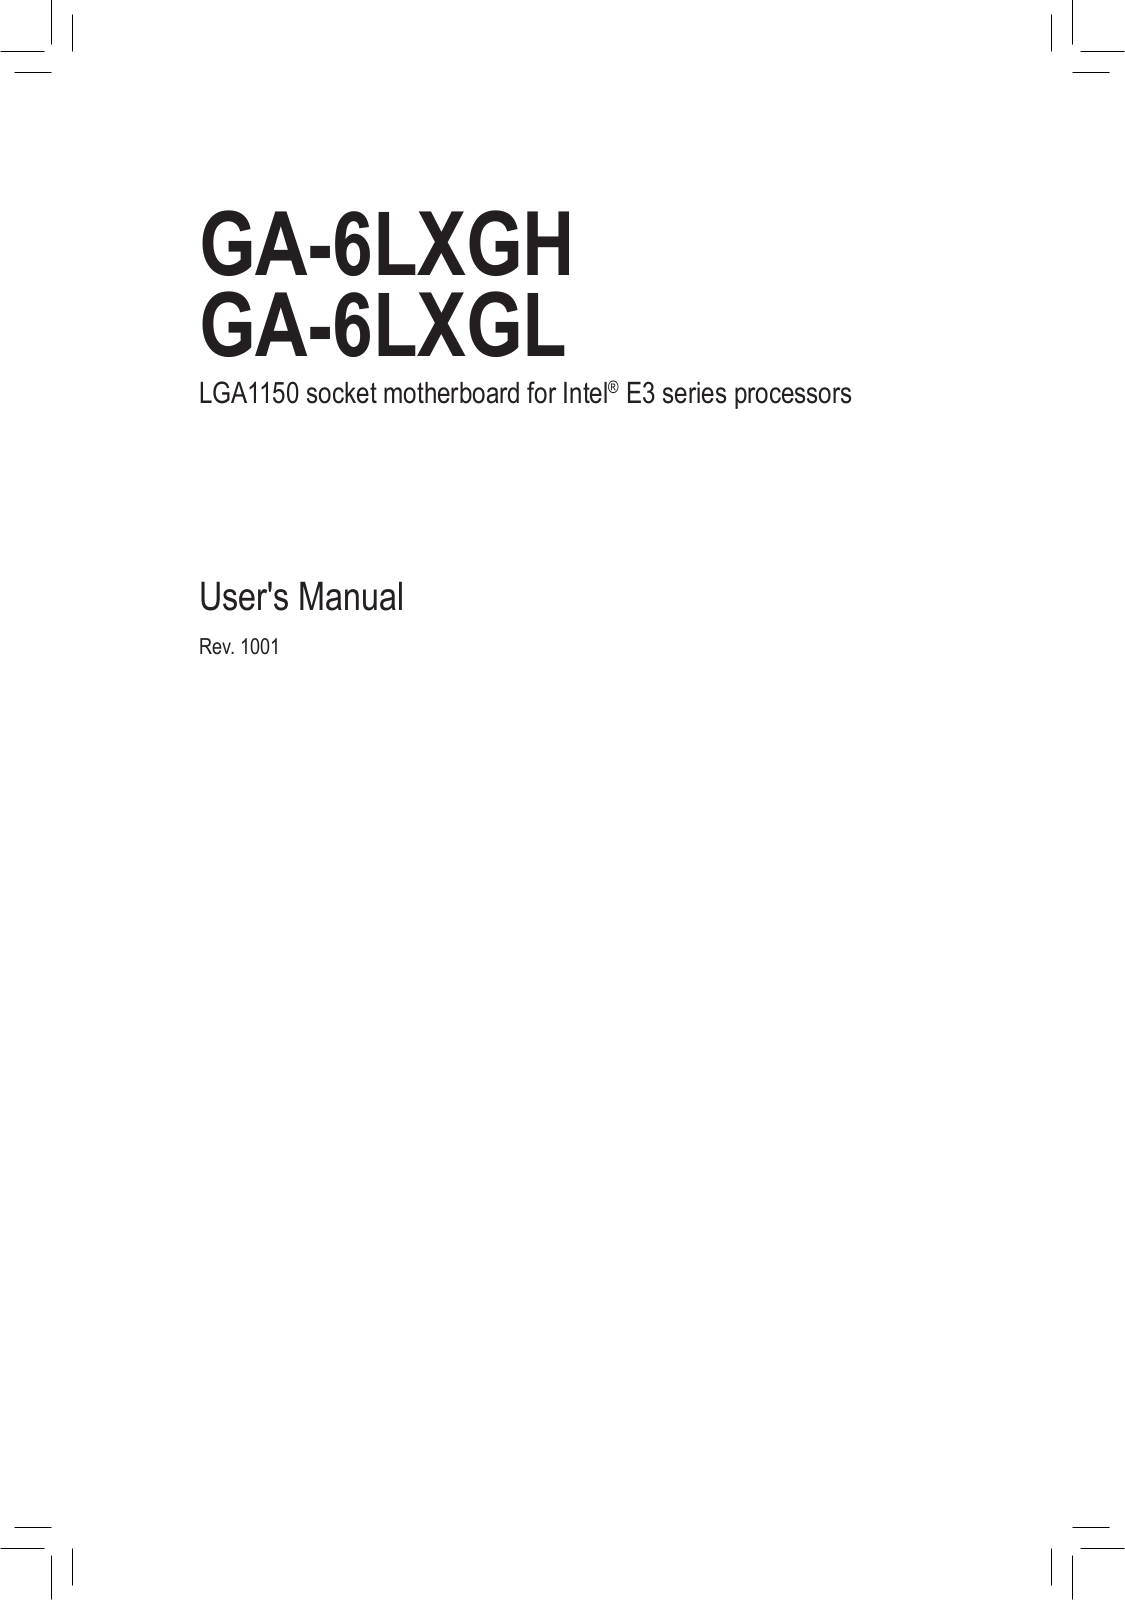 Gigabyte GA-6LXGL, GA-6LXGH Manual